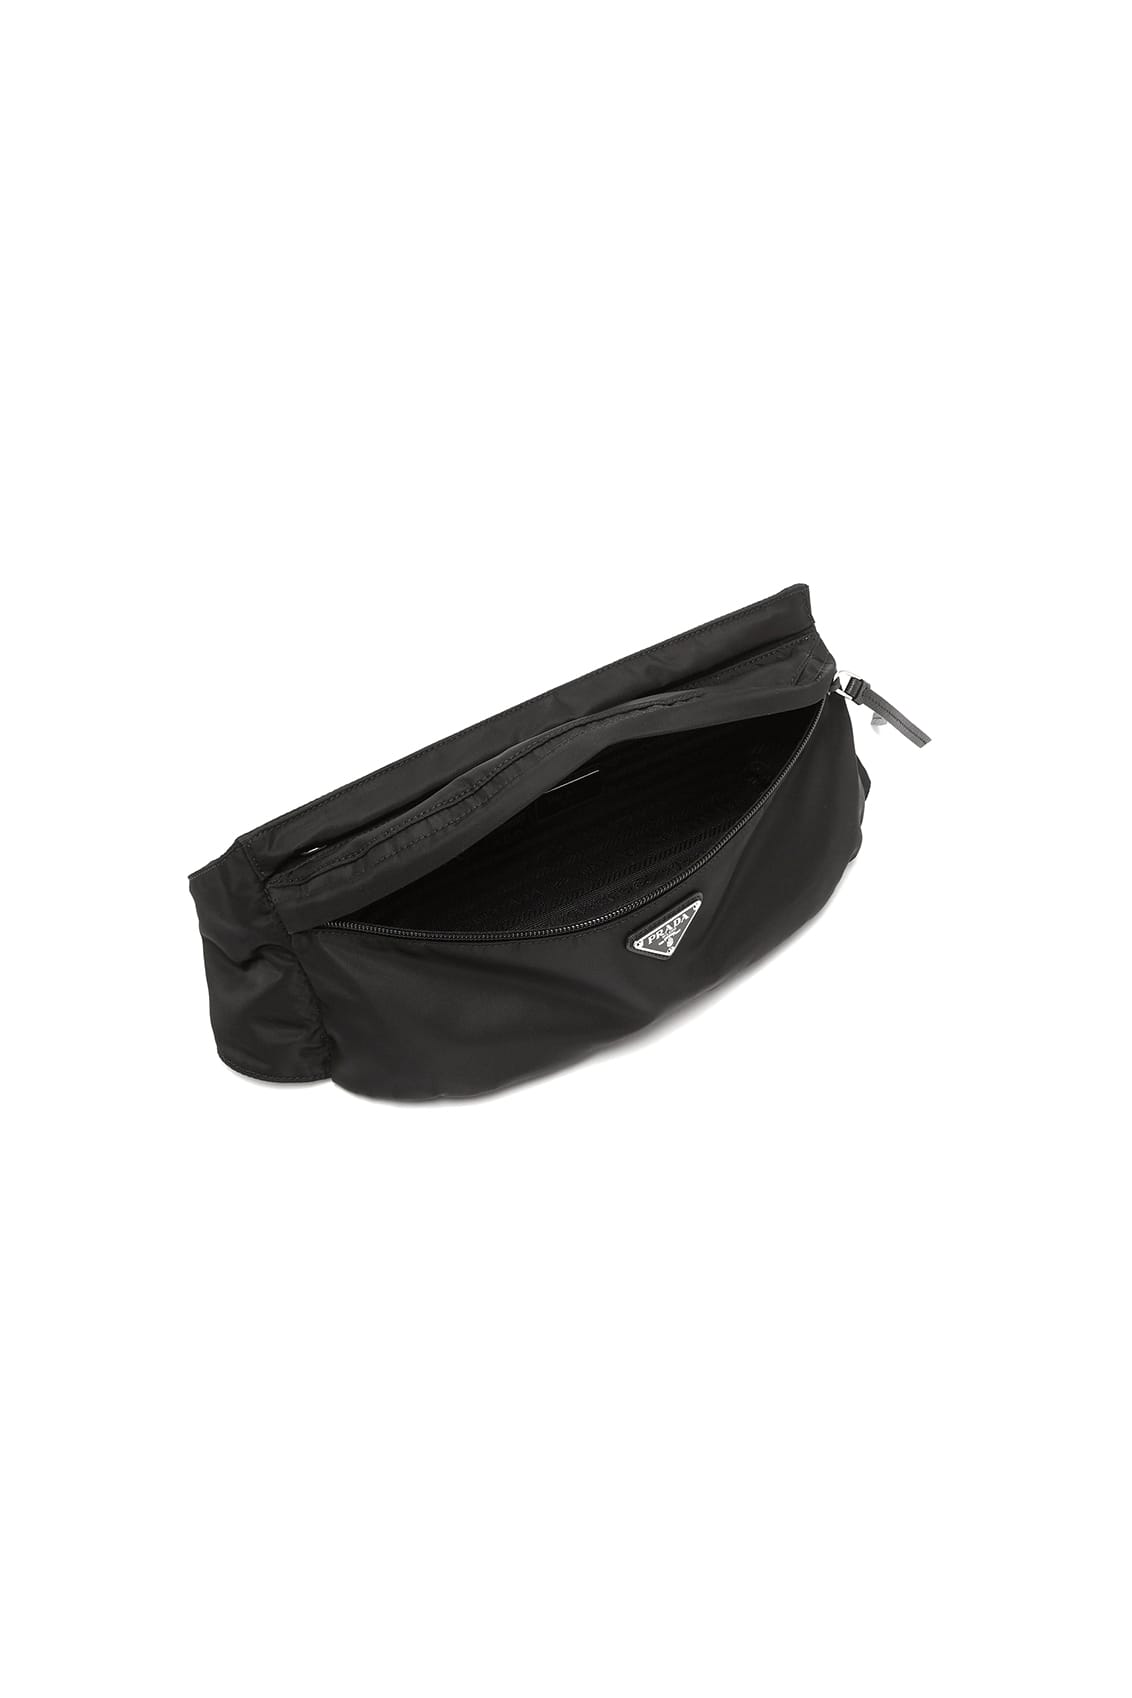 Prada Releases Black Nylon Belt Bag 